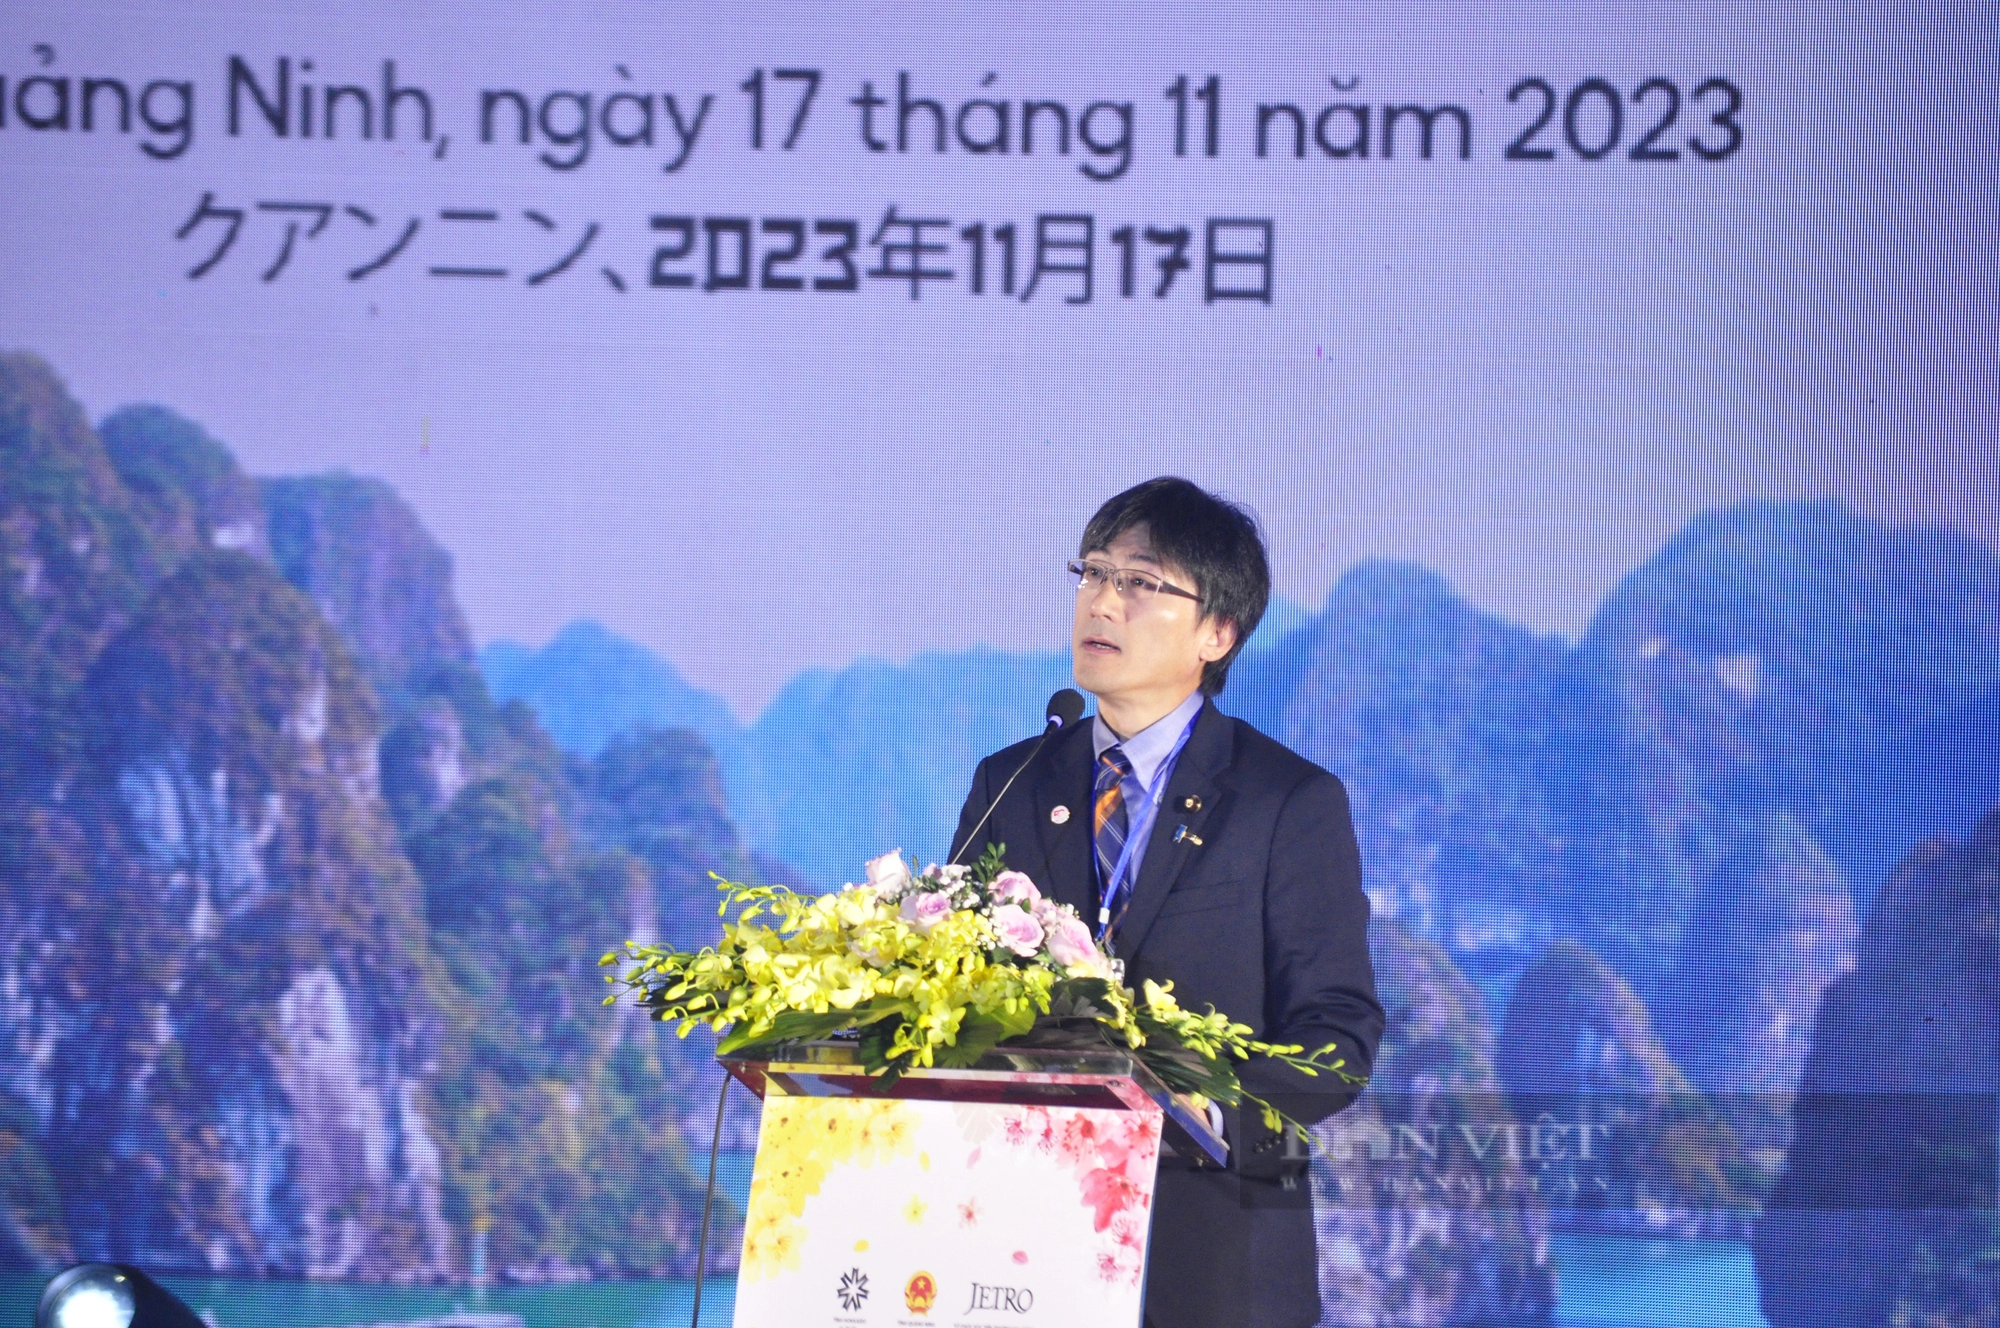 Quảng Ninh trao giấy chứng nhận đăng ký đầu tư cho 4 dự án FDI Nhật Bản, tổng vốn trên 80 triệu USD - Ảnh 2.